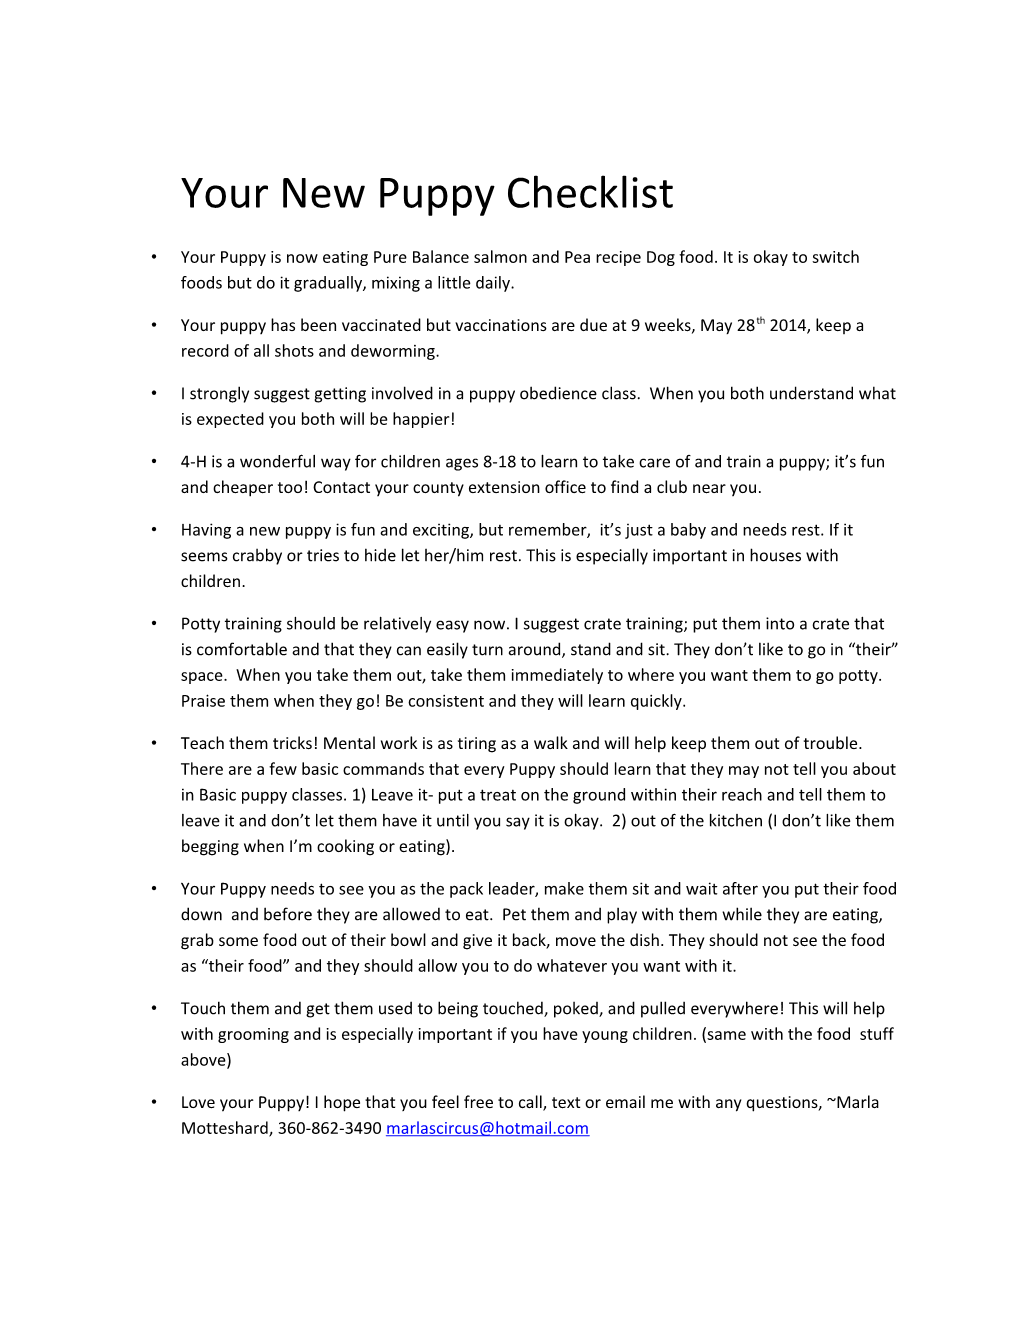 Your New Puppy Checklist